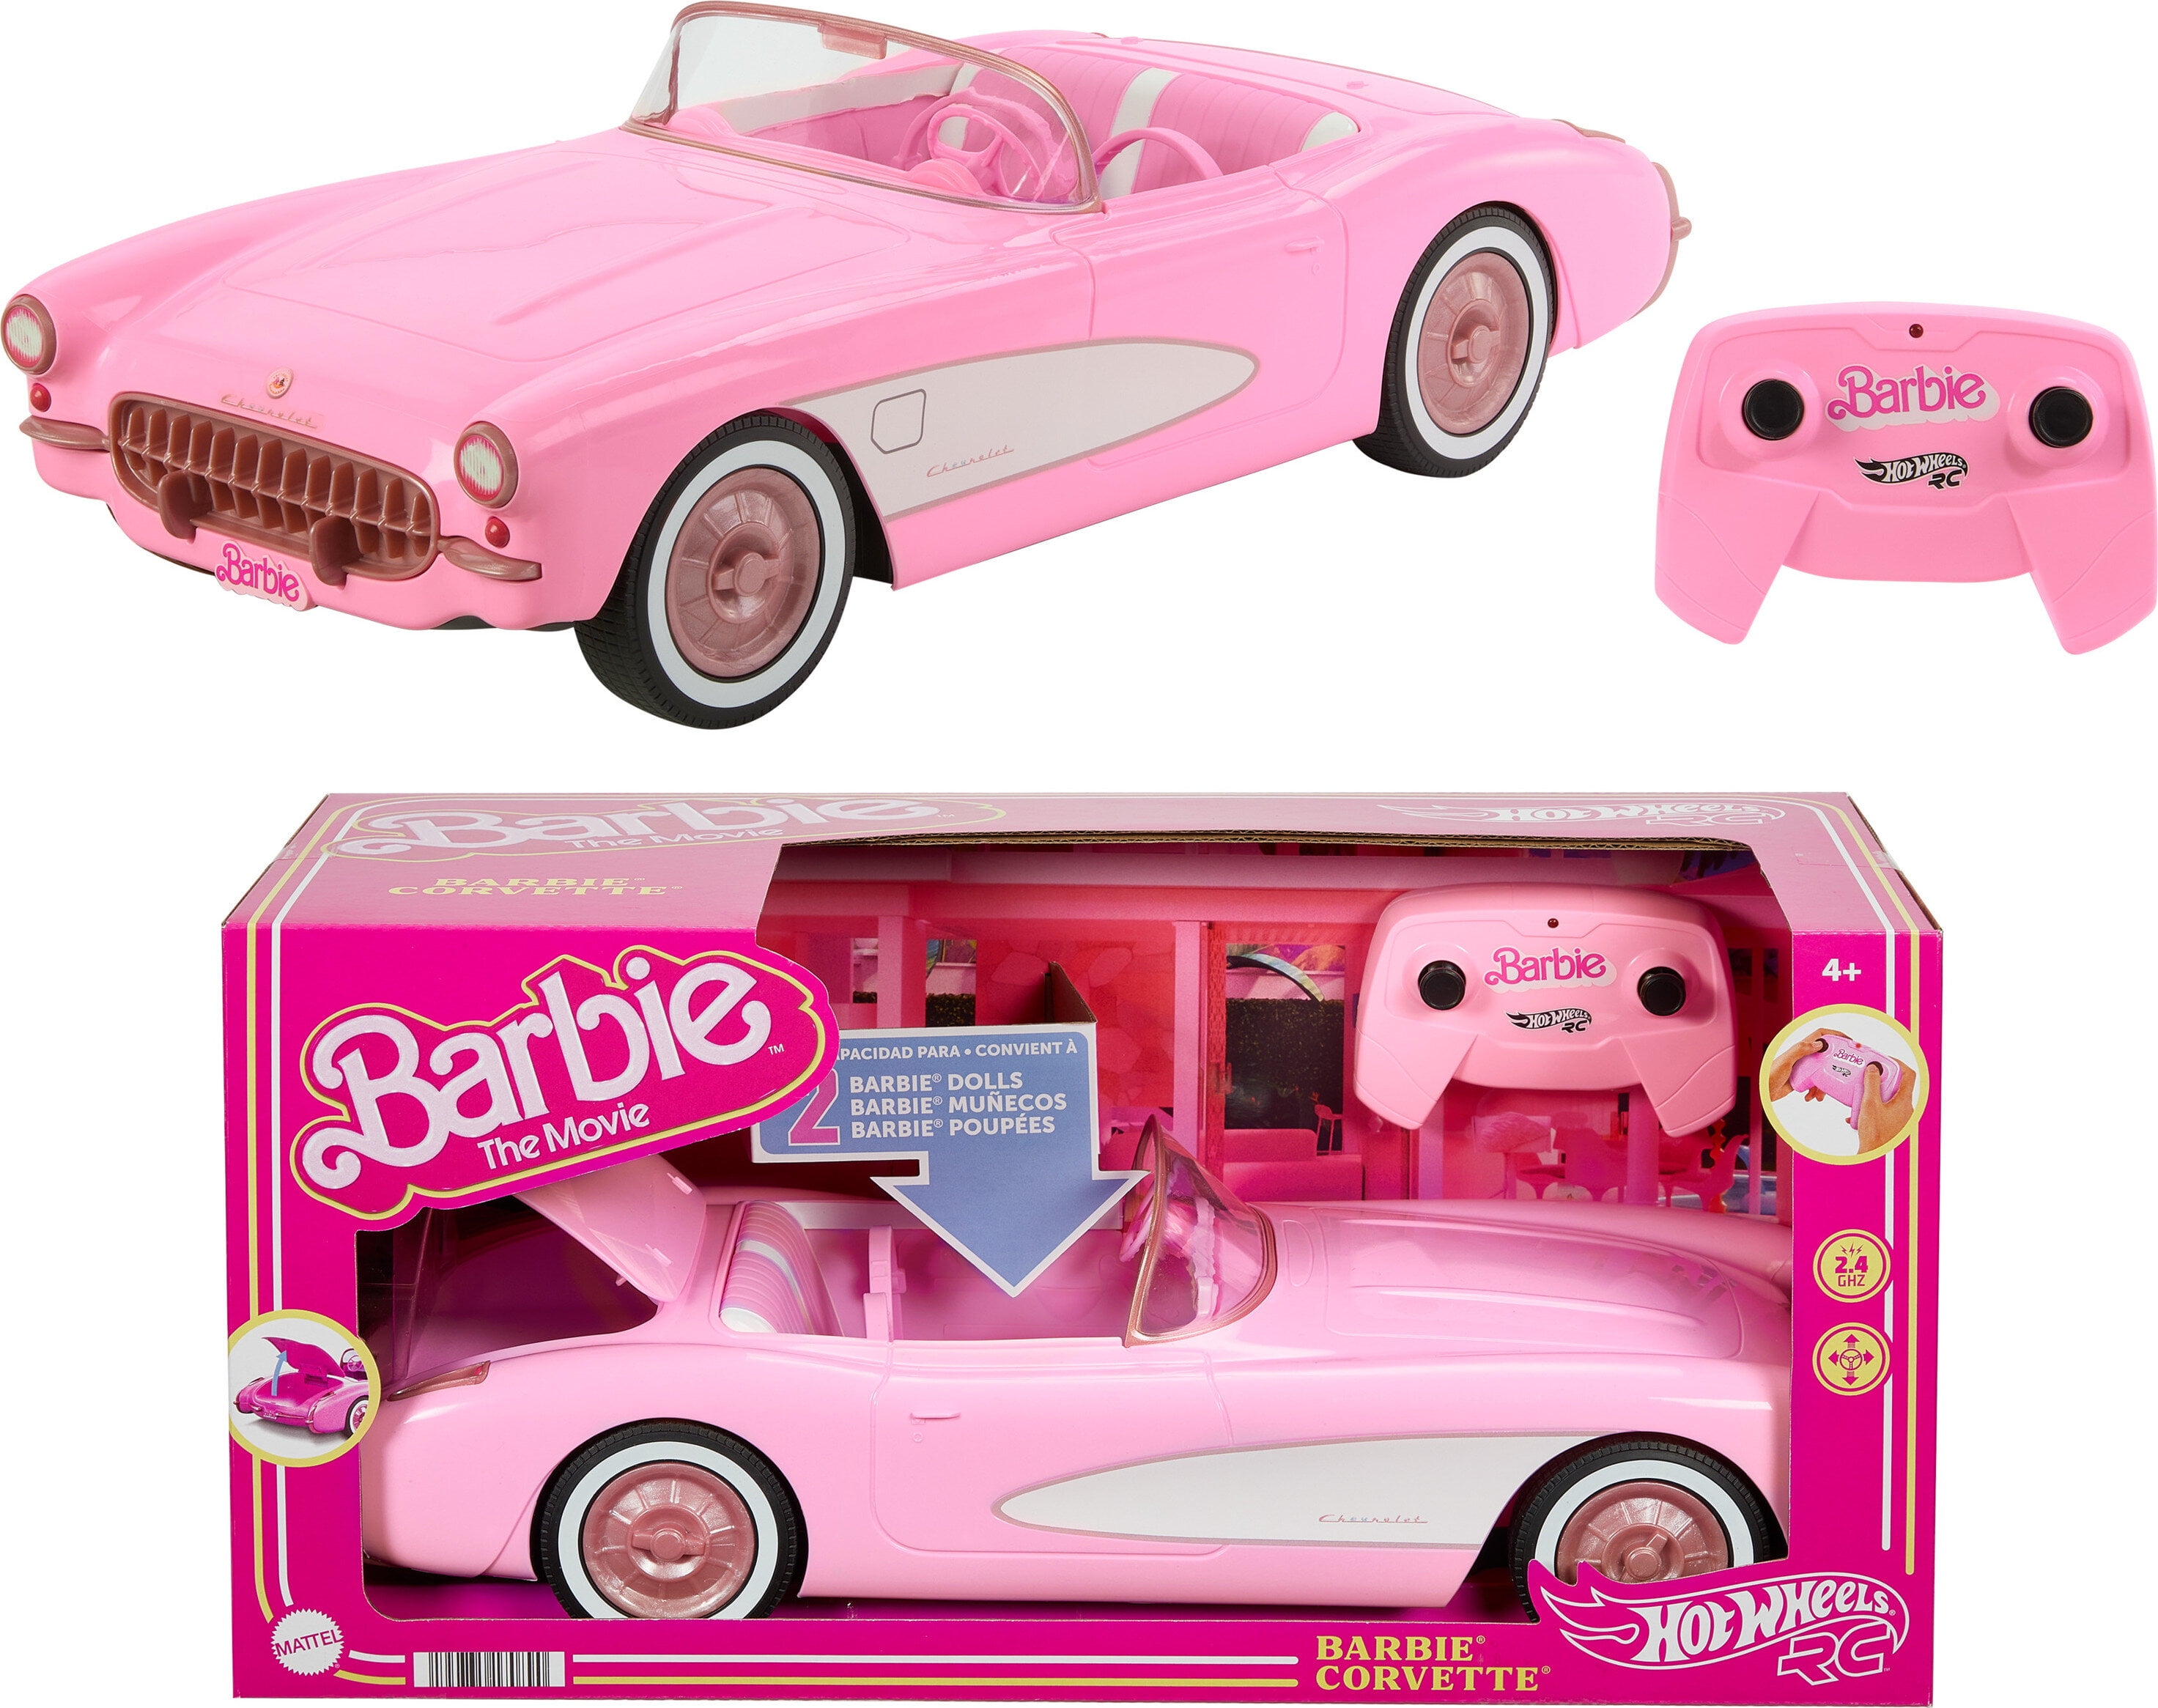 PRÉ-VENDA Carro Hot Wheels RC Barbie The Movie Barbie Corvette - Mattel